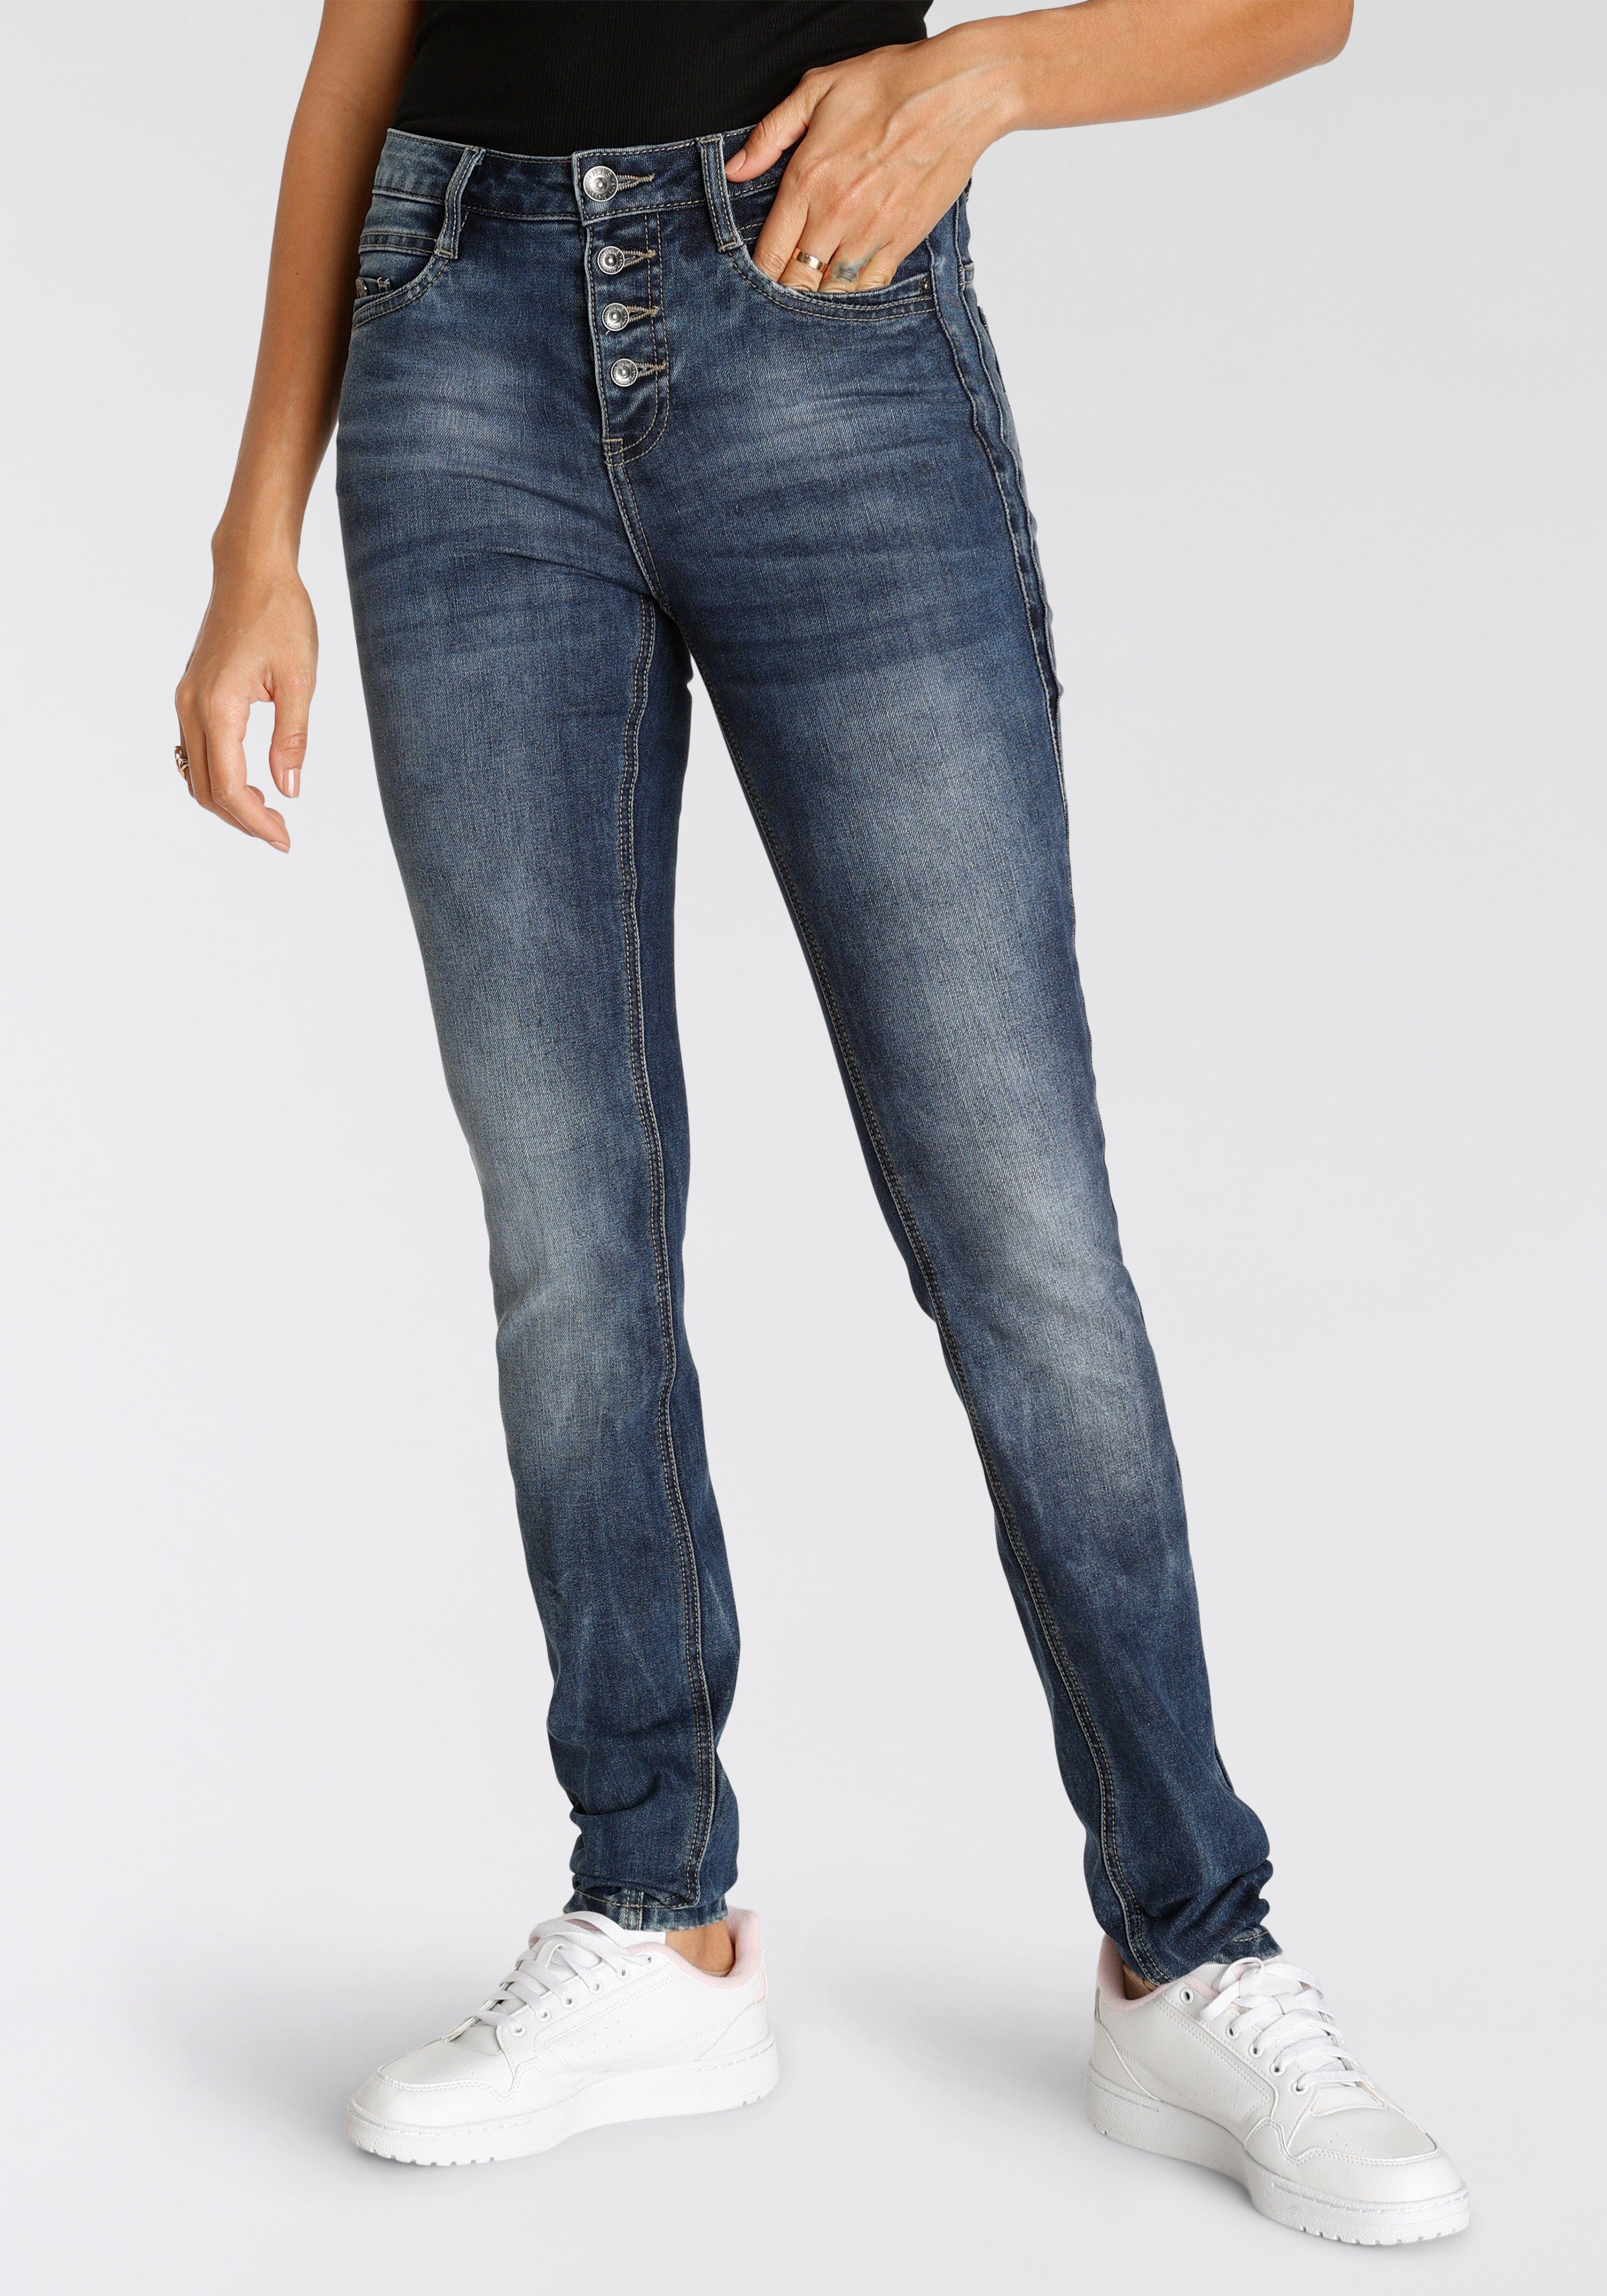 H.I.S 5-pocket jeans MacyHS ecologische, waterbesparende productie door ozon wash